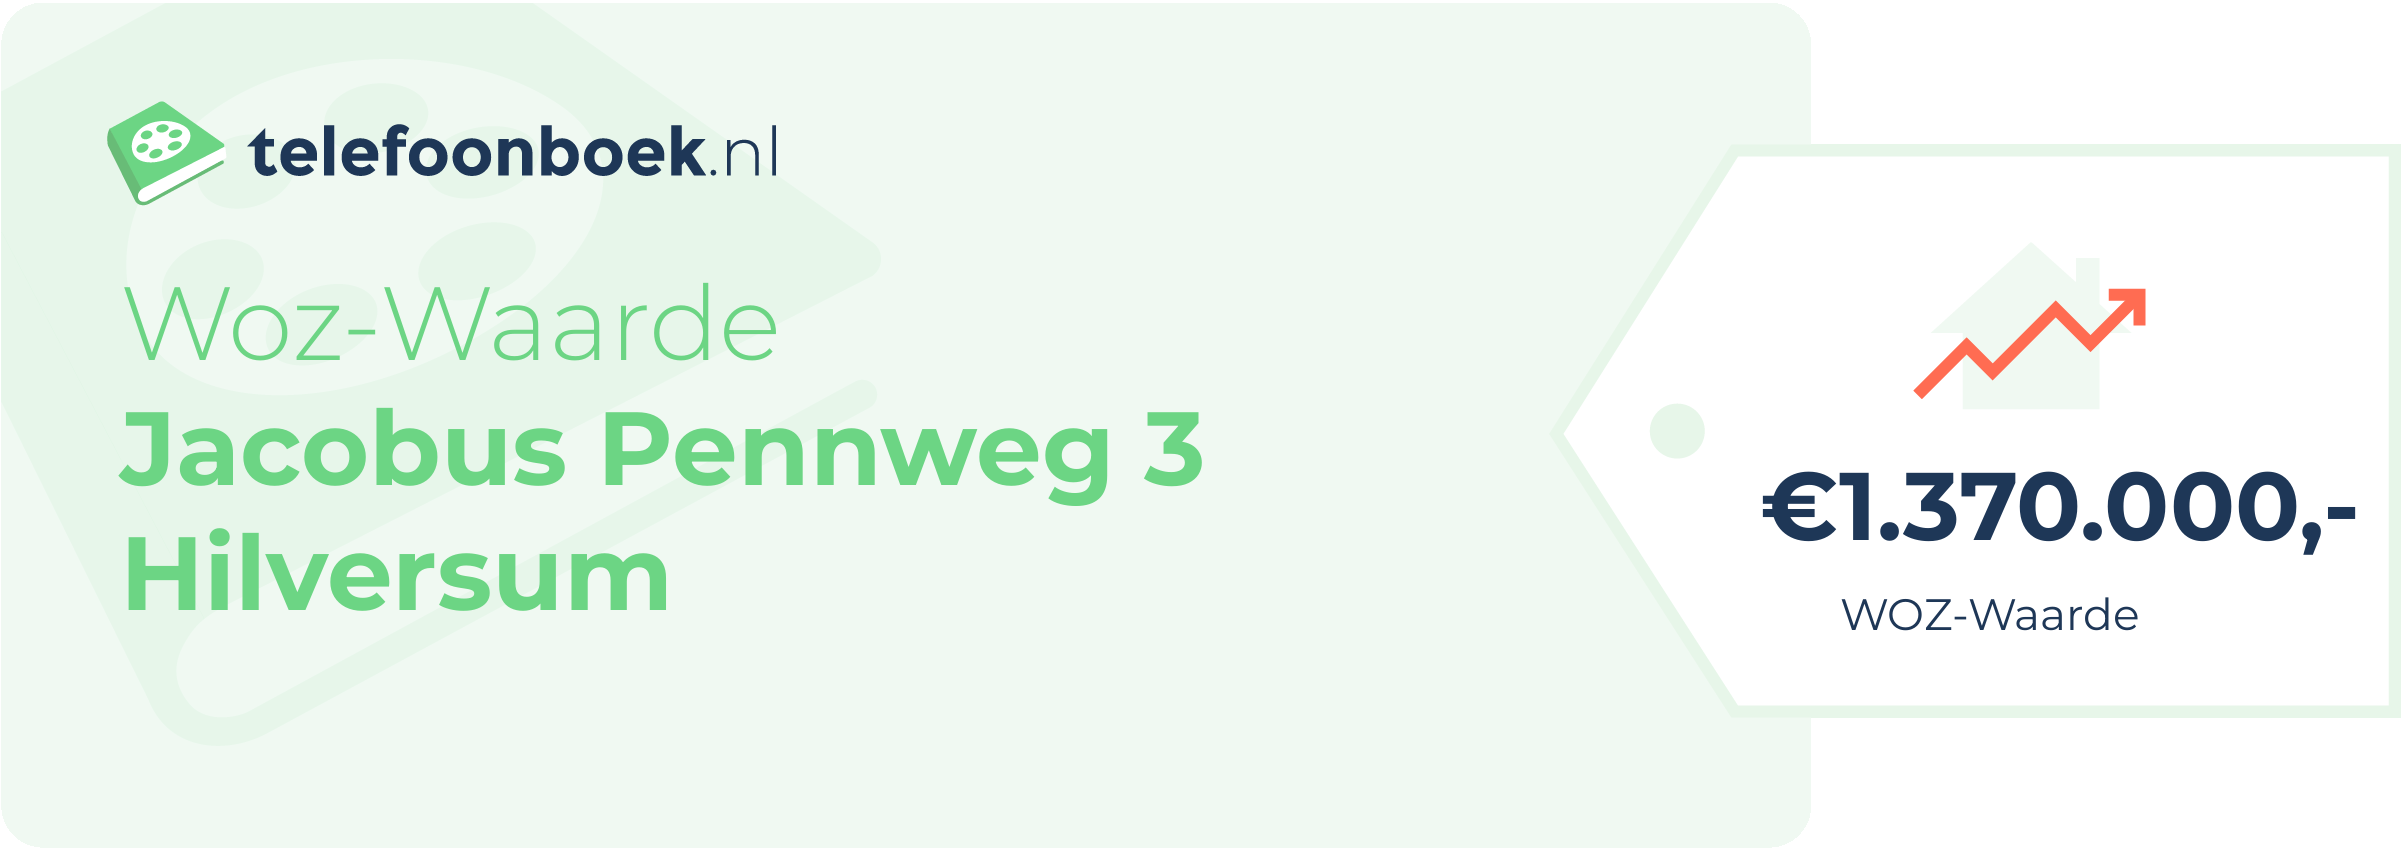 WOZ-waarde Jacobus Pennweg 3 Hilversum